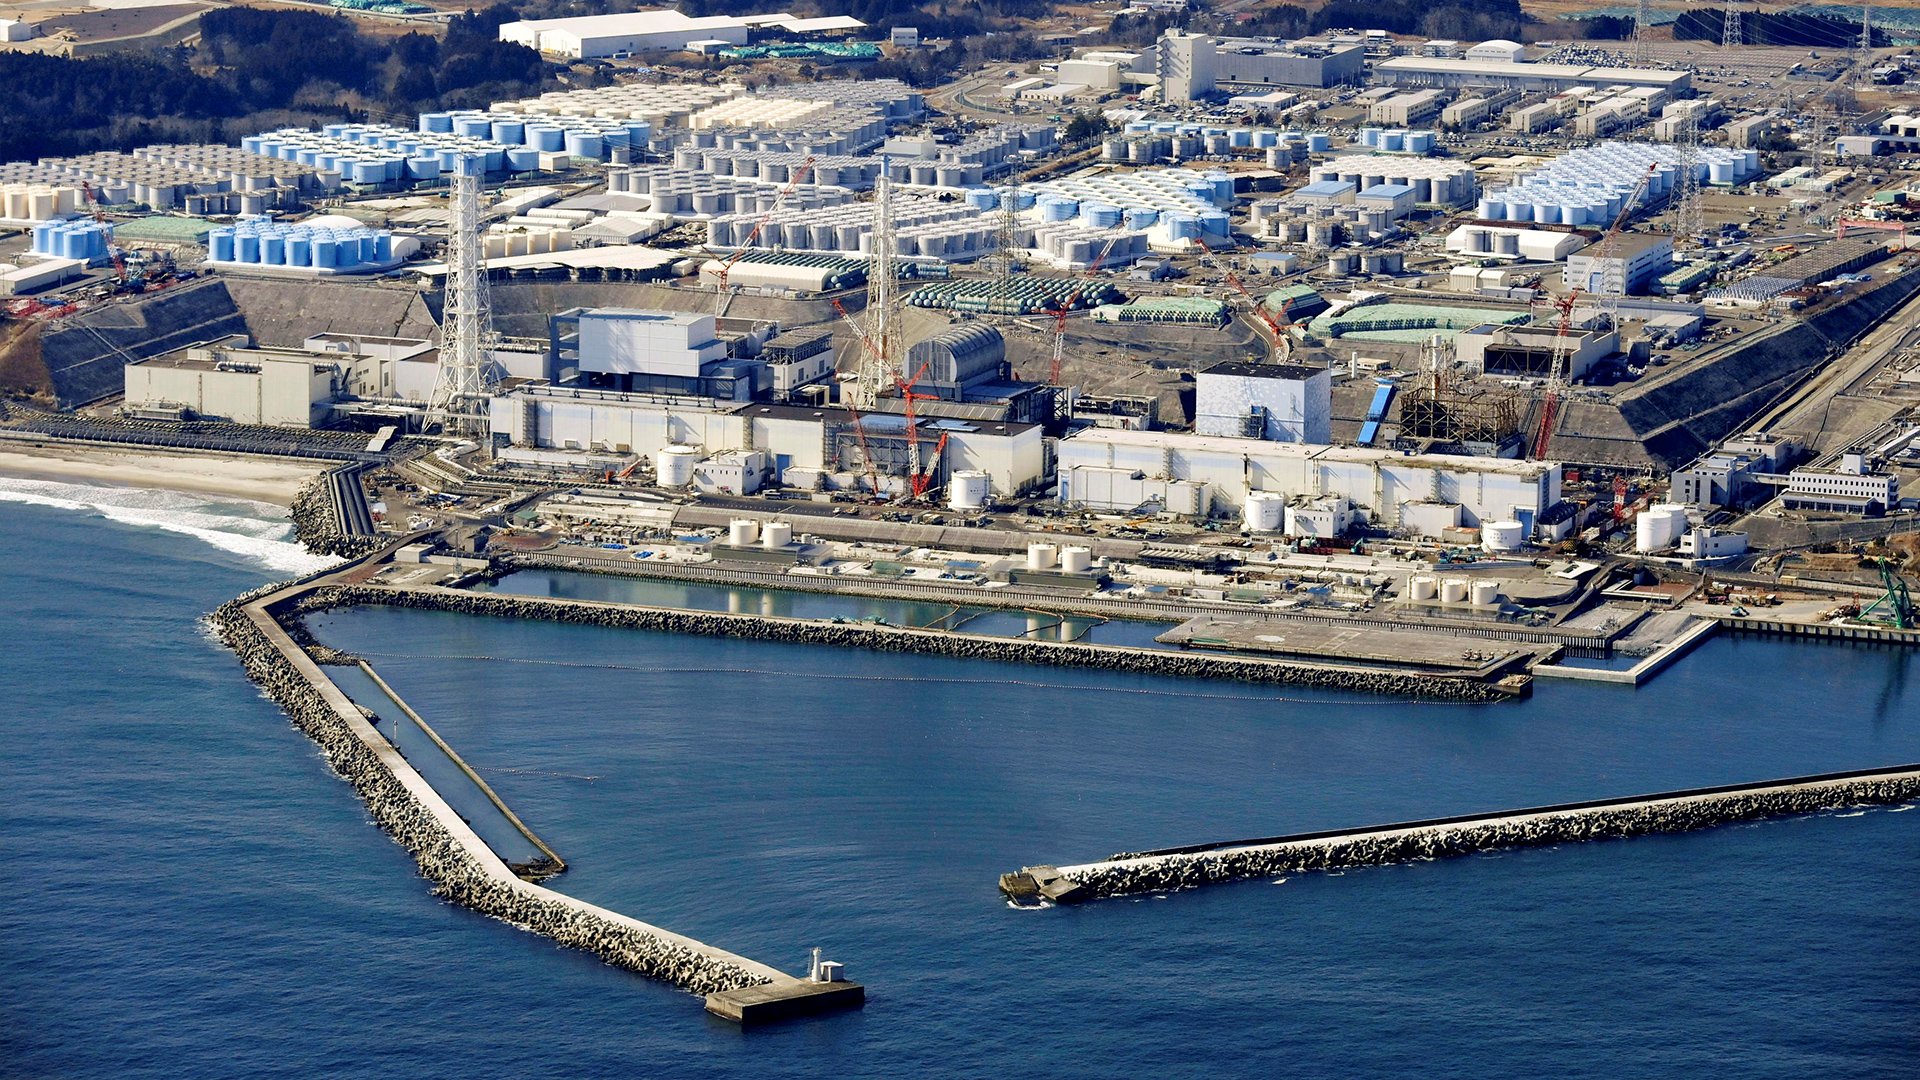 Japan's return to nuclear power faces test as new leader Kishida visits  Fukushima | South China Morning Post